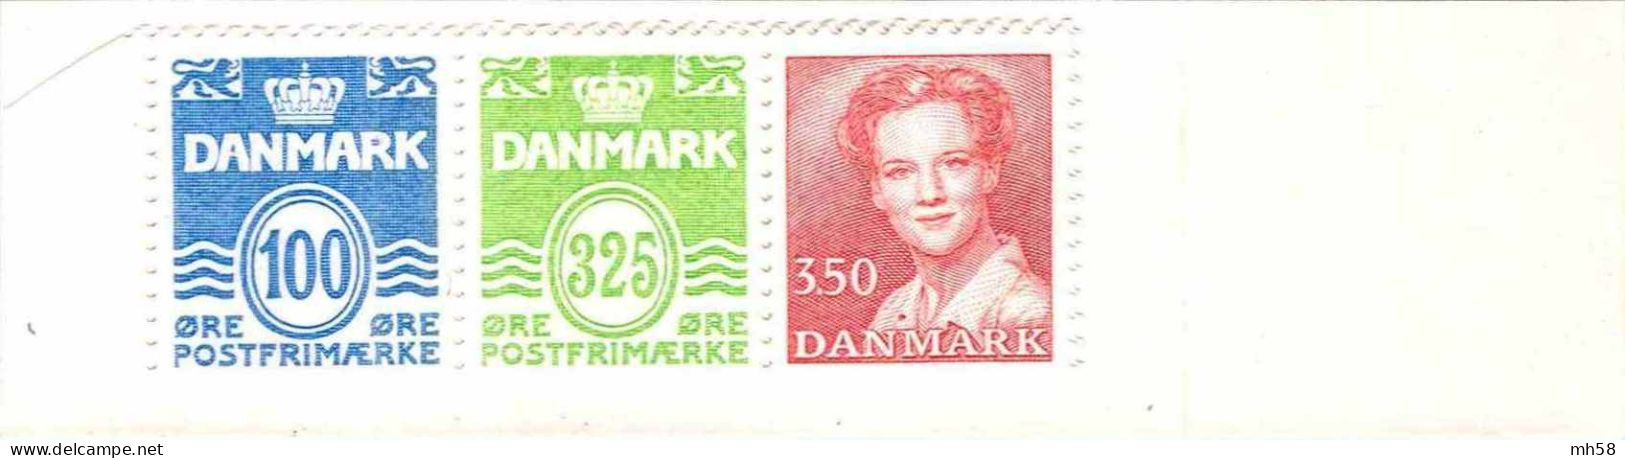 DANEMARK 1990 - Carnet / Booklet / MH Indice C10 - 10 Kr Chiffres / Reine Margarethe - YT C 966 I / MI MH 41 - Booklets